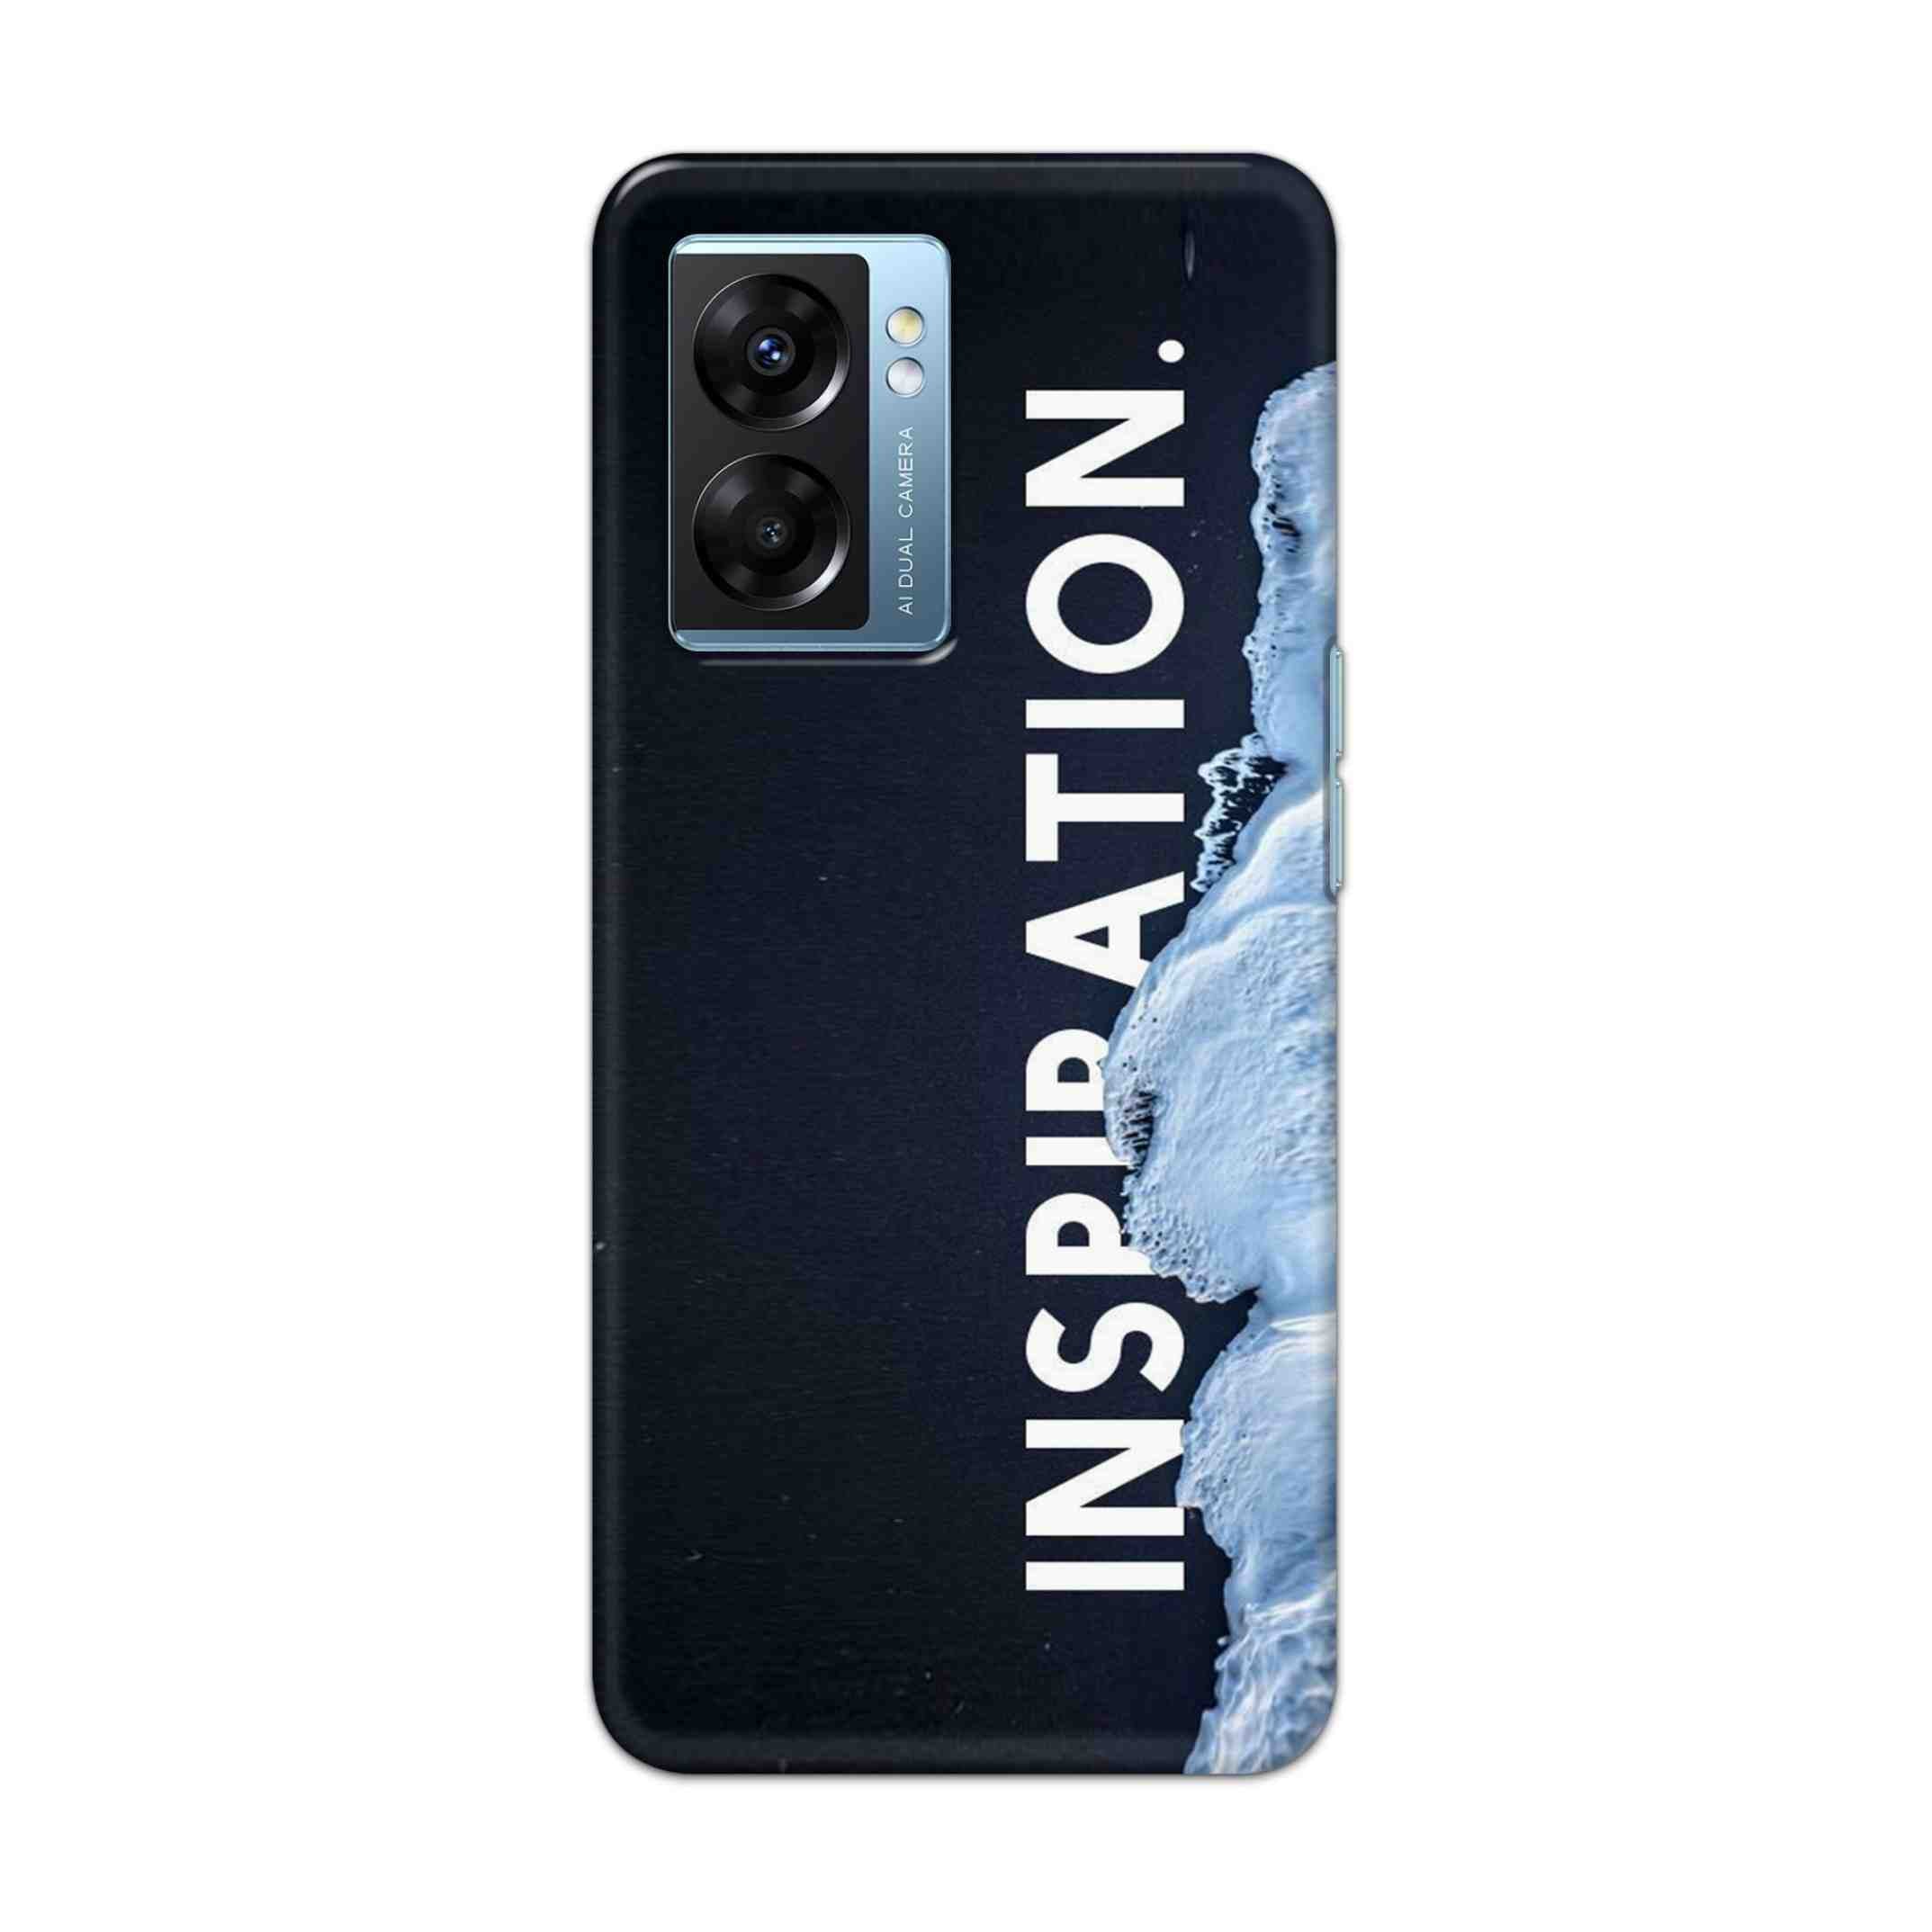 Buy Inspiration Hard Back Mobile Phone Case Cover For OPPO K10 5G Online